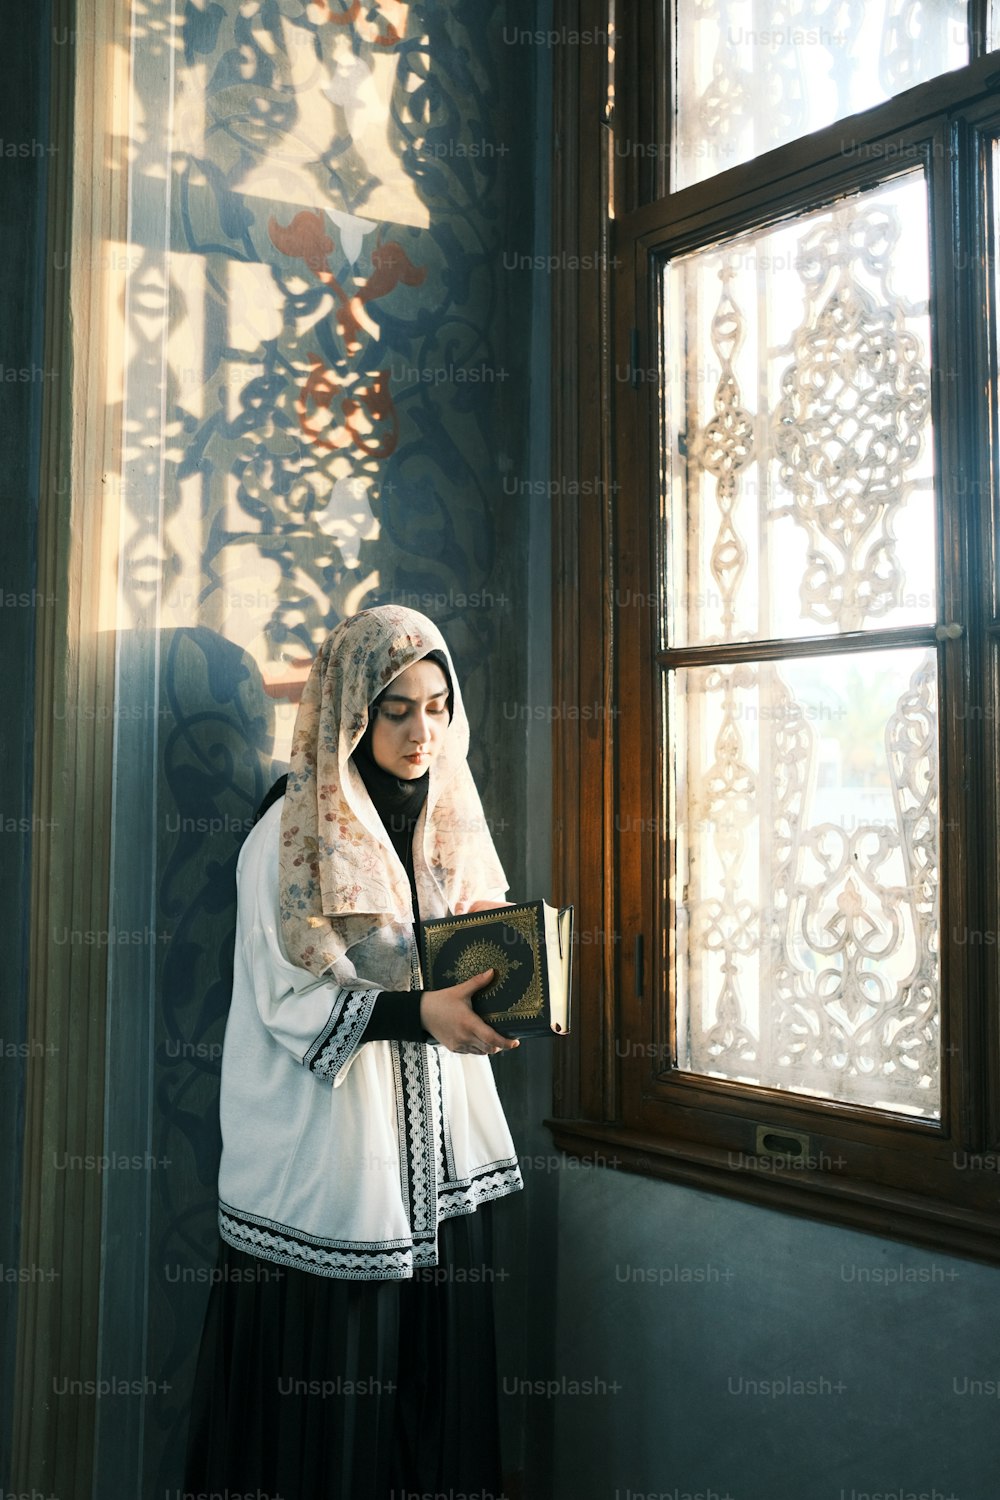 Eine Frau in einem weiß-schwarzen Outfit, die ein Buch hält